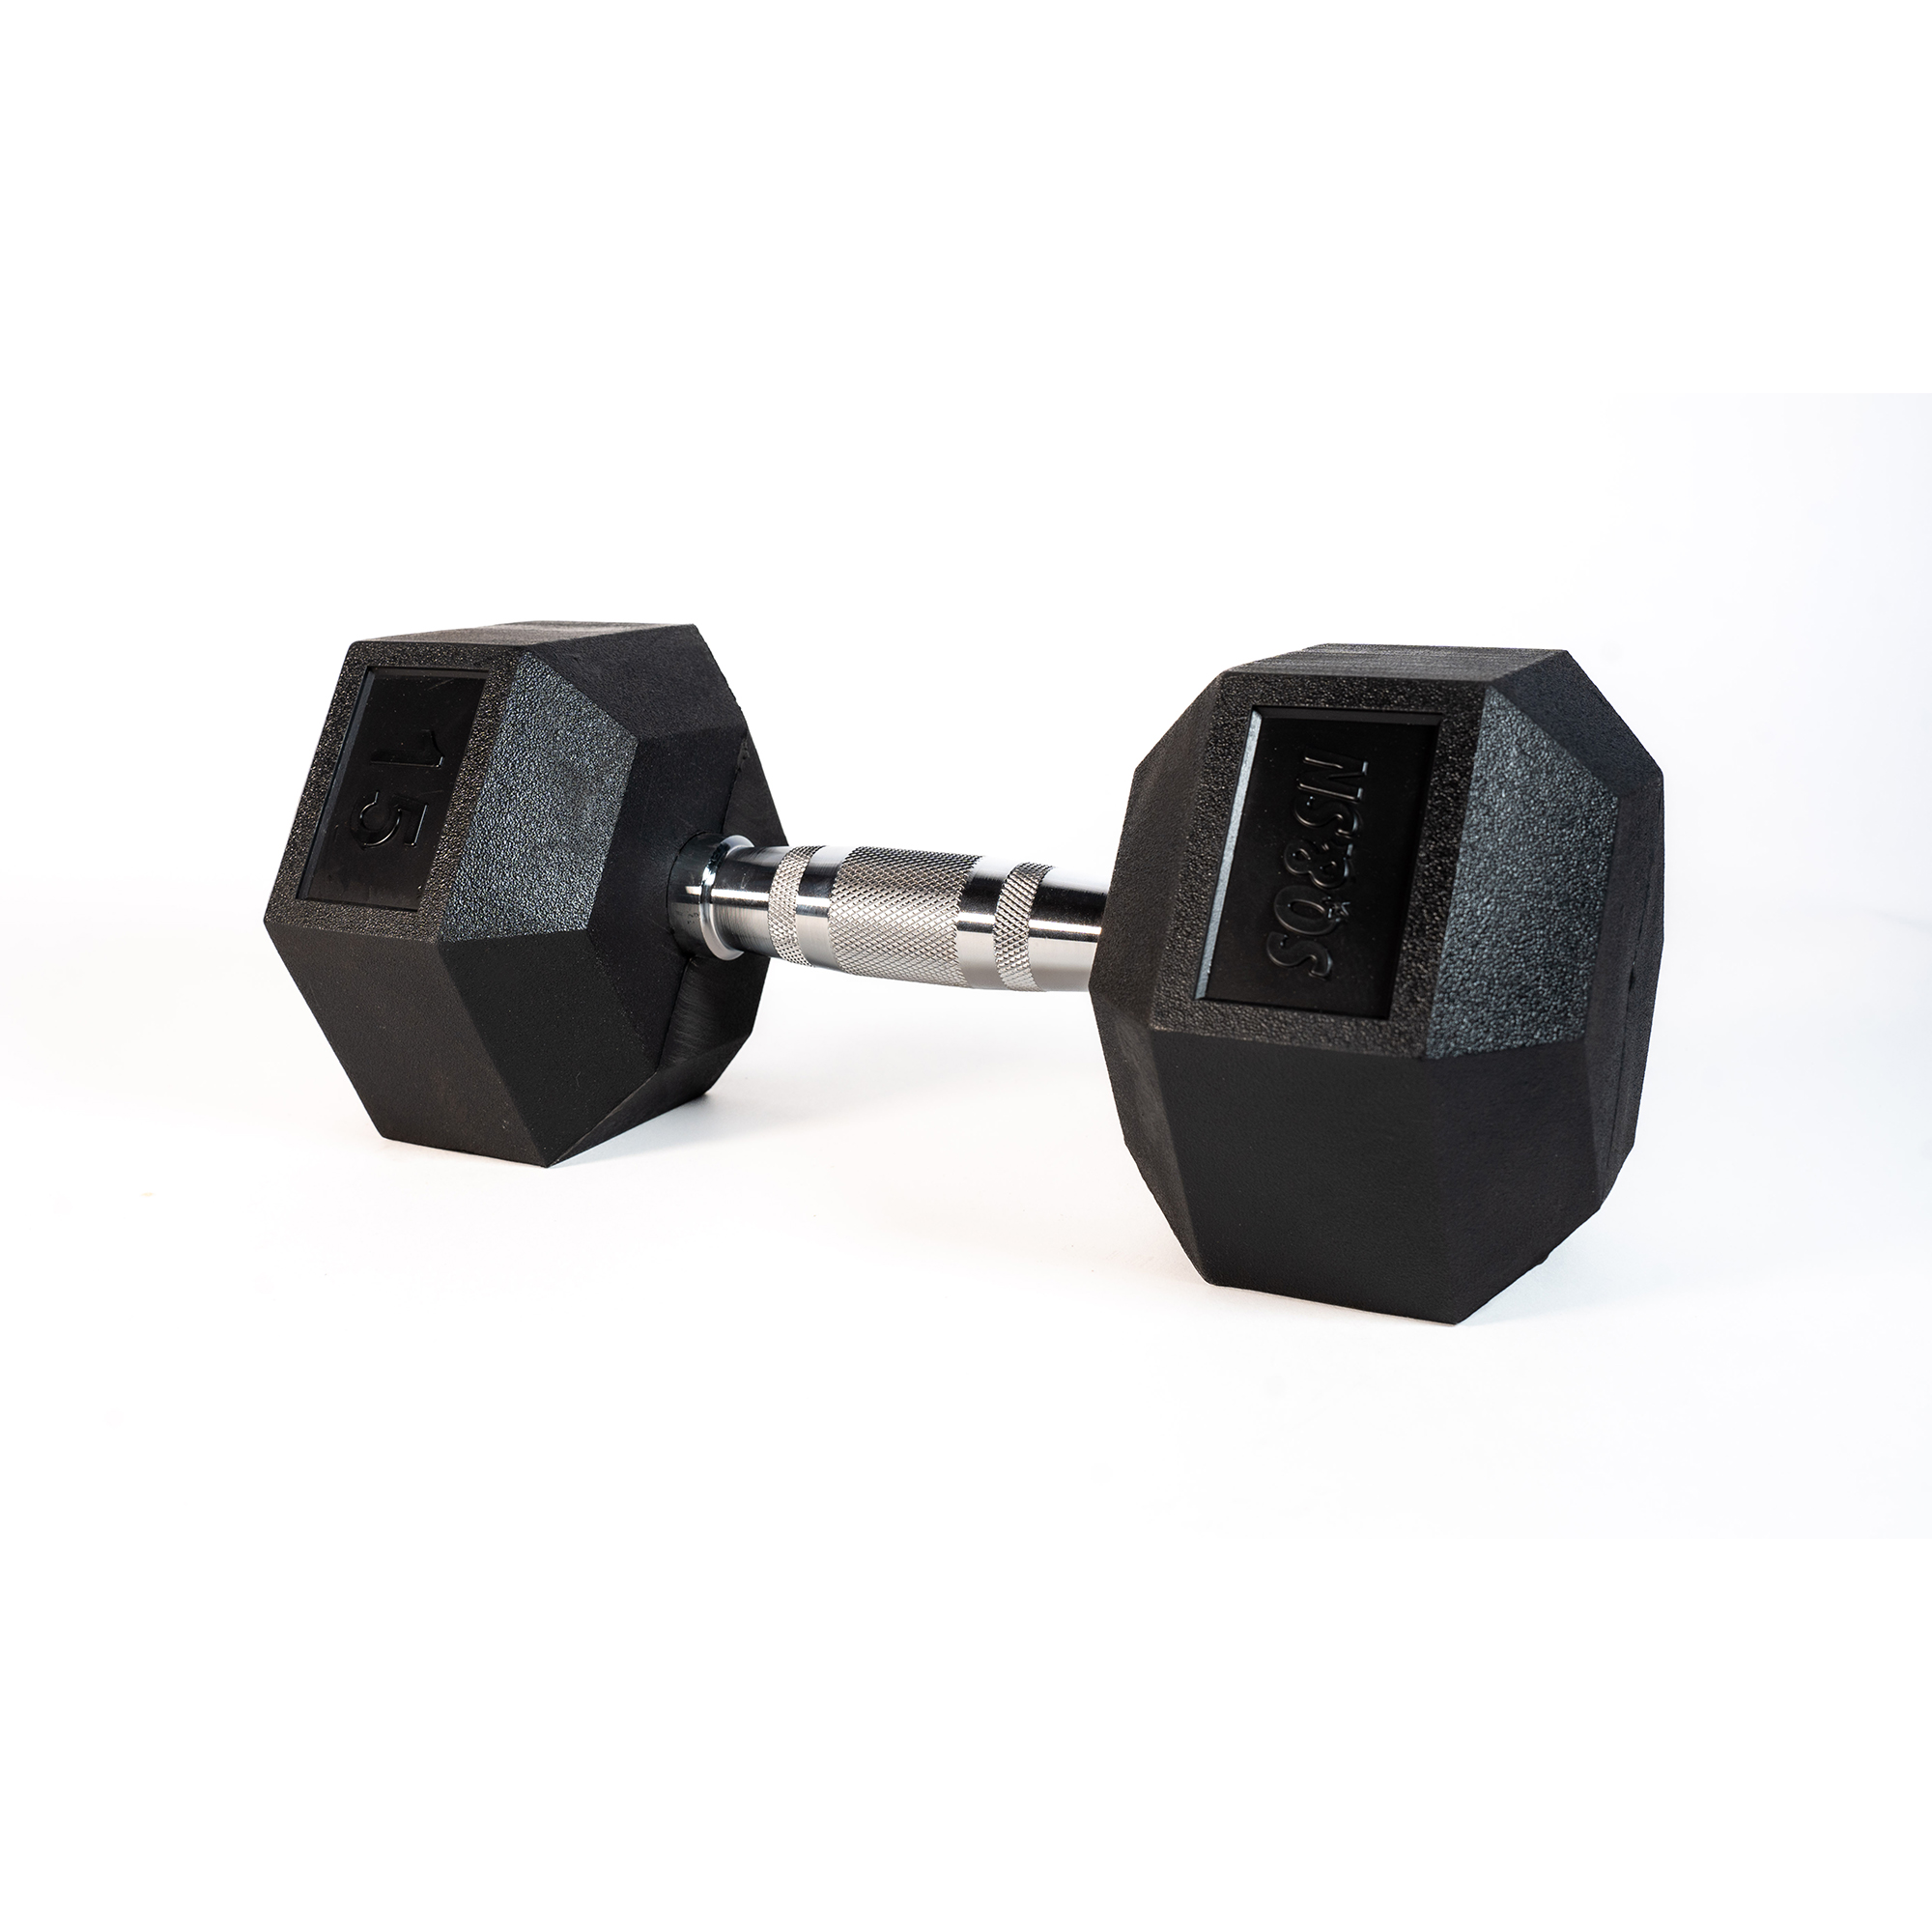 SQ&SN Hexagon Håndvægt (15 kg) med forkromet greb. Udstyr til crossfit træning, styrketræning og funktionel træning thumbnail